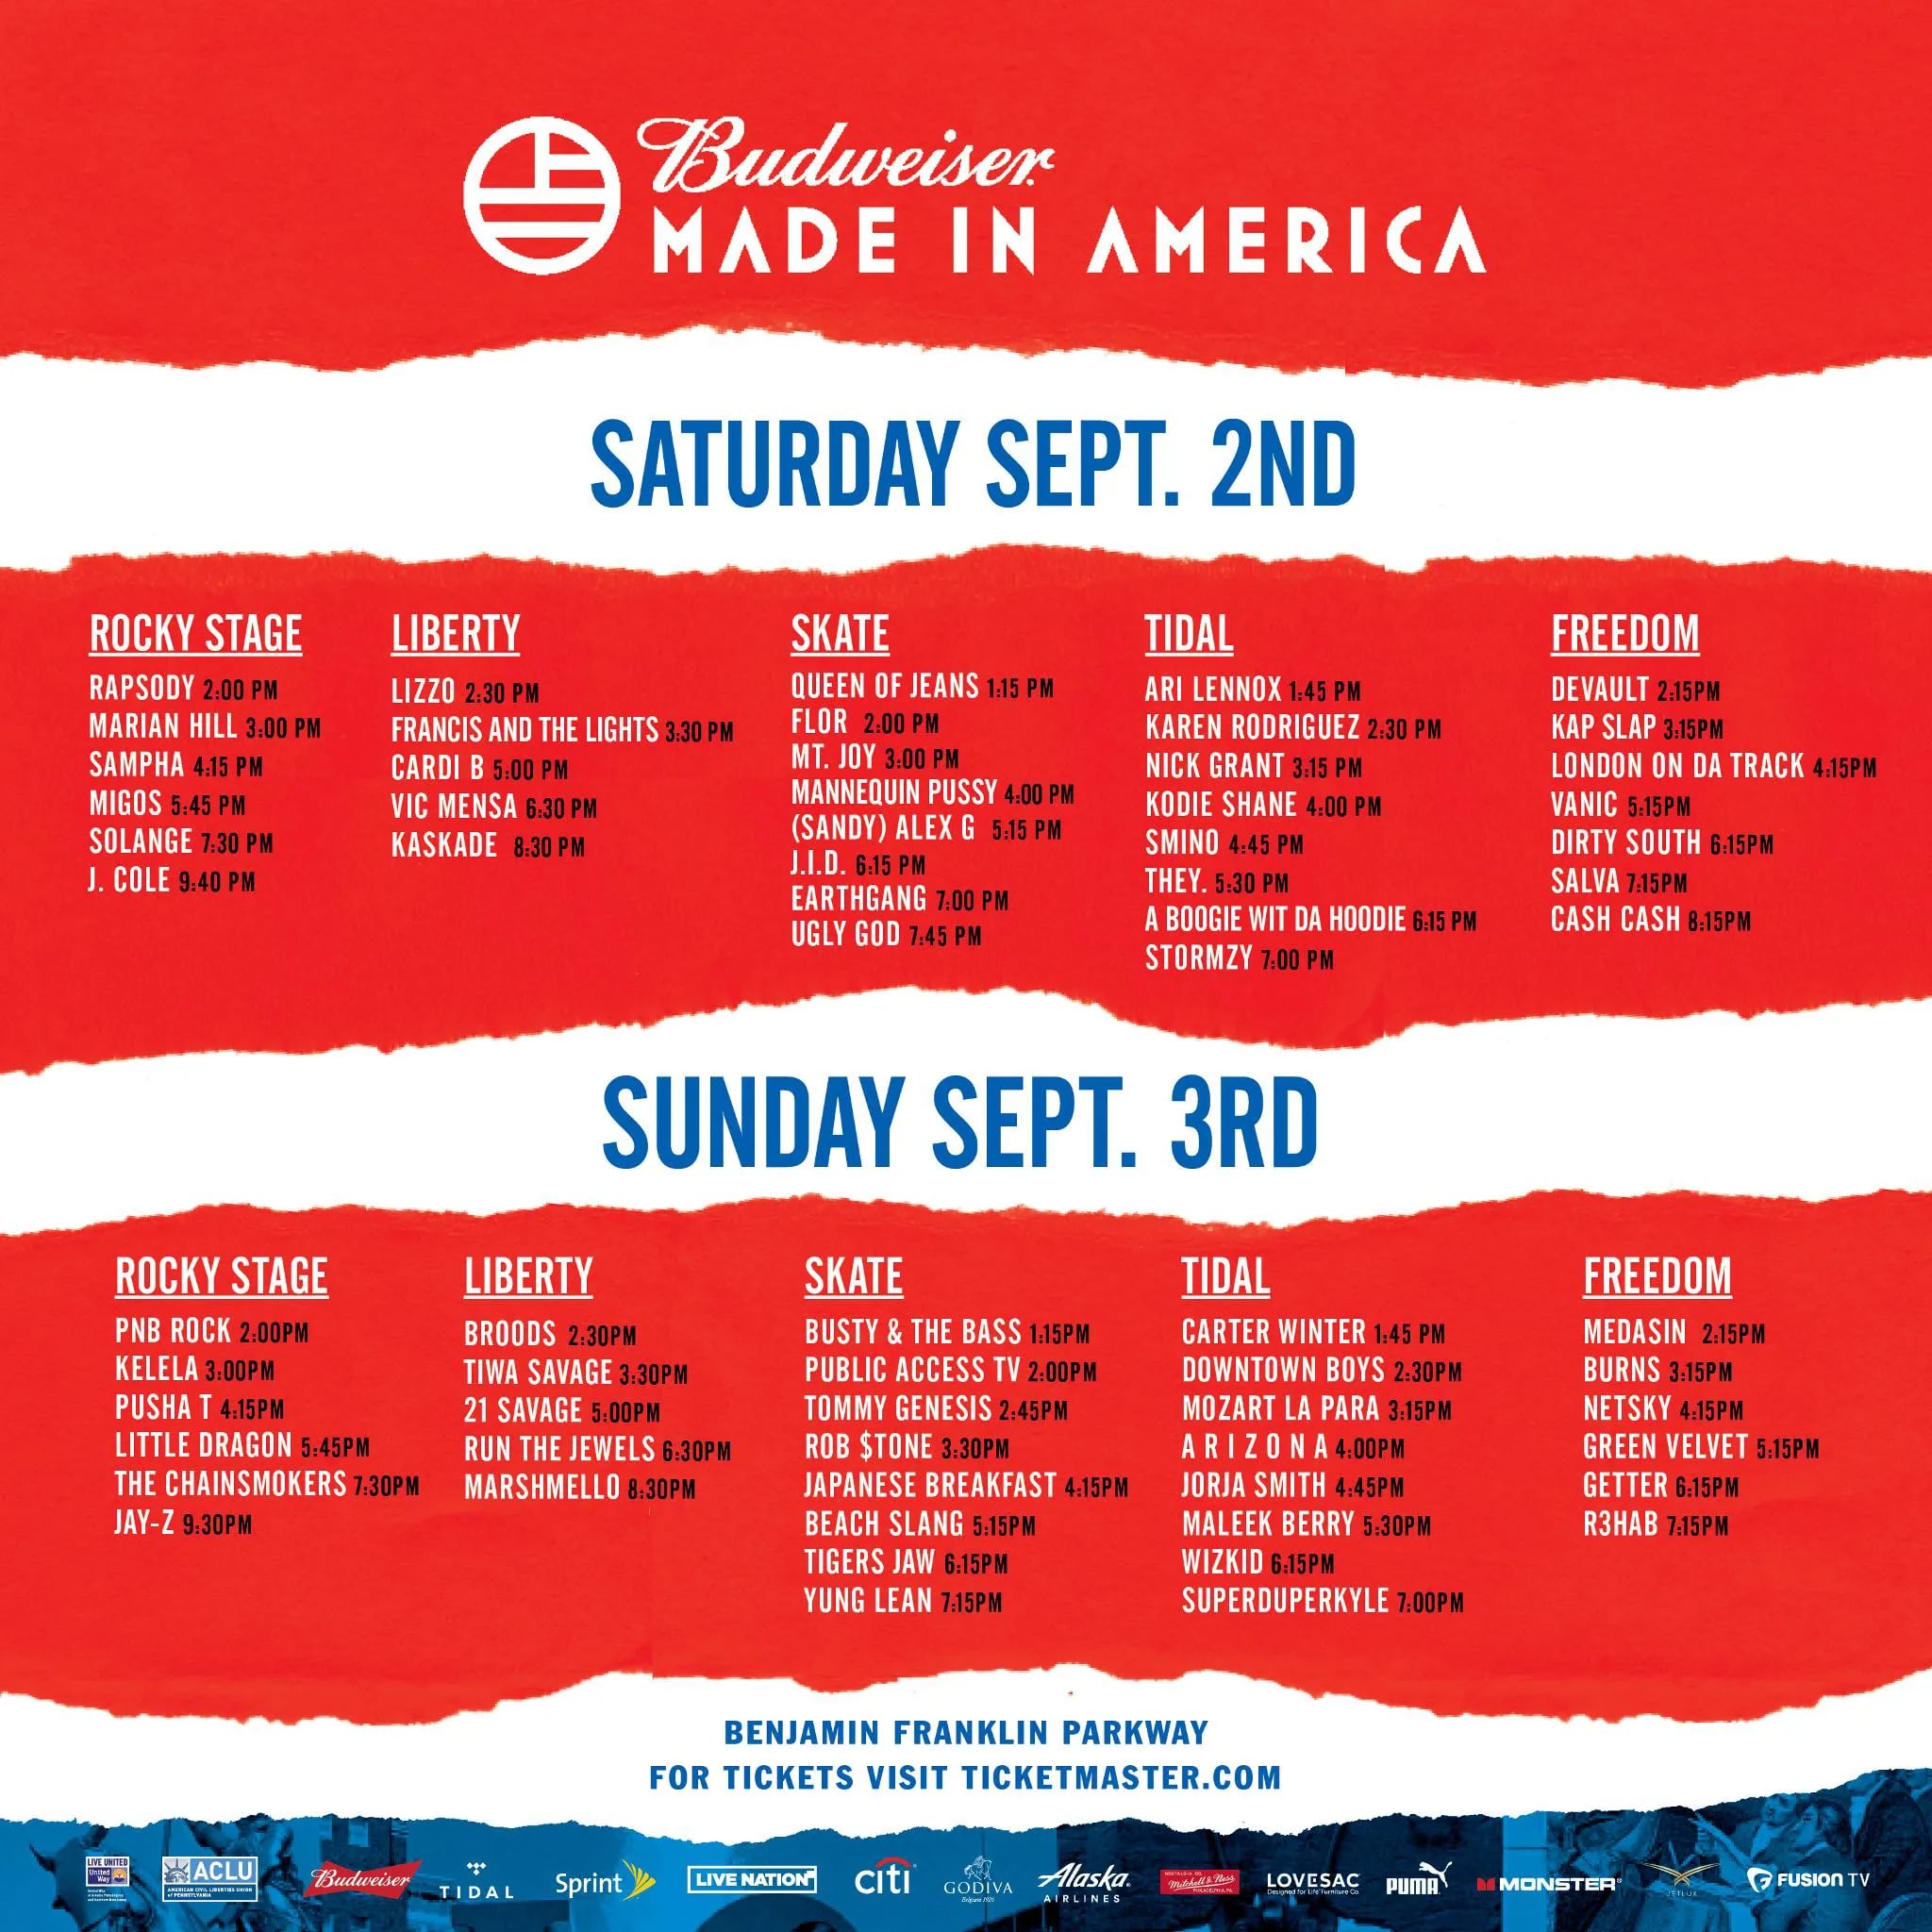 Made in America' schedule announced